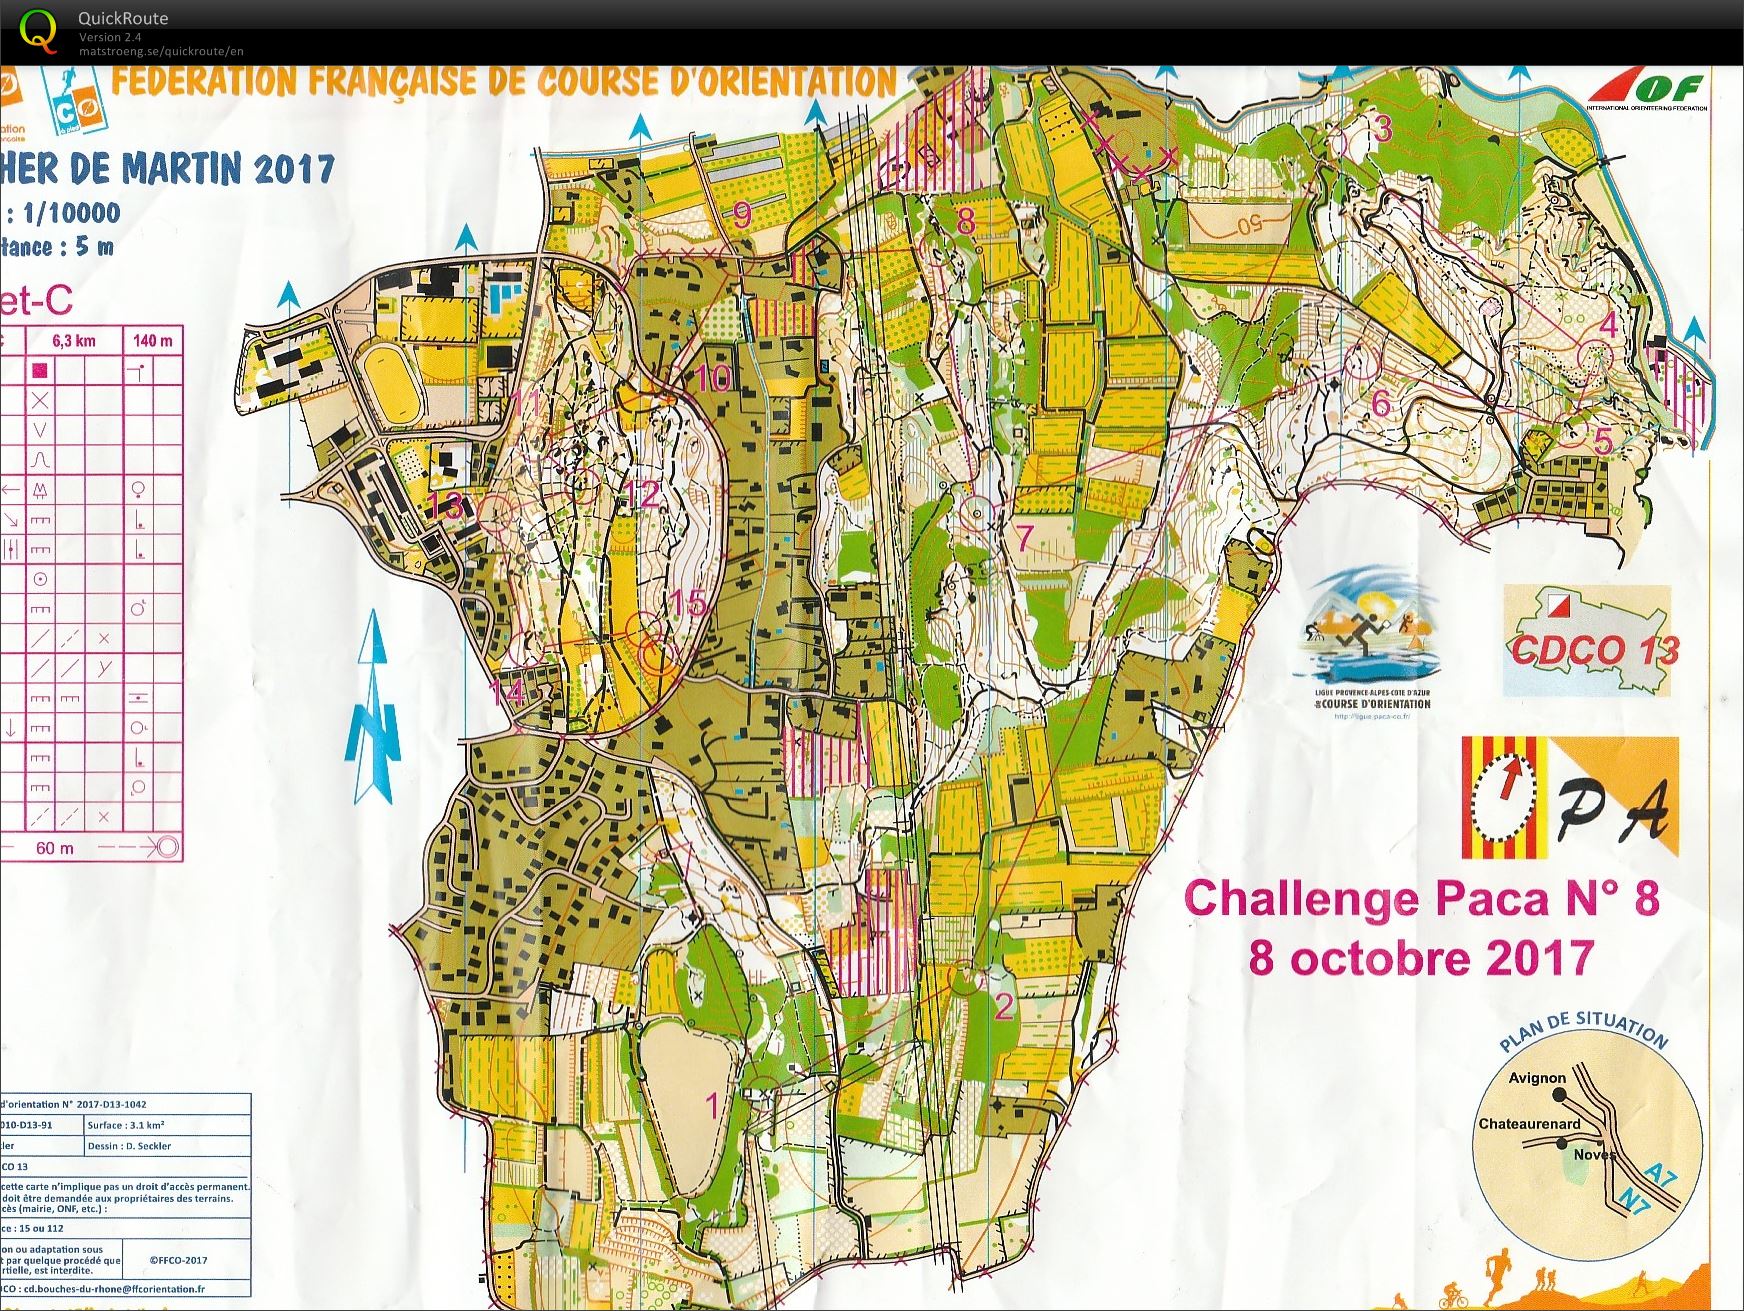 Challenge PACA n° 8 Chateaurenard (08-10-2017)